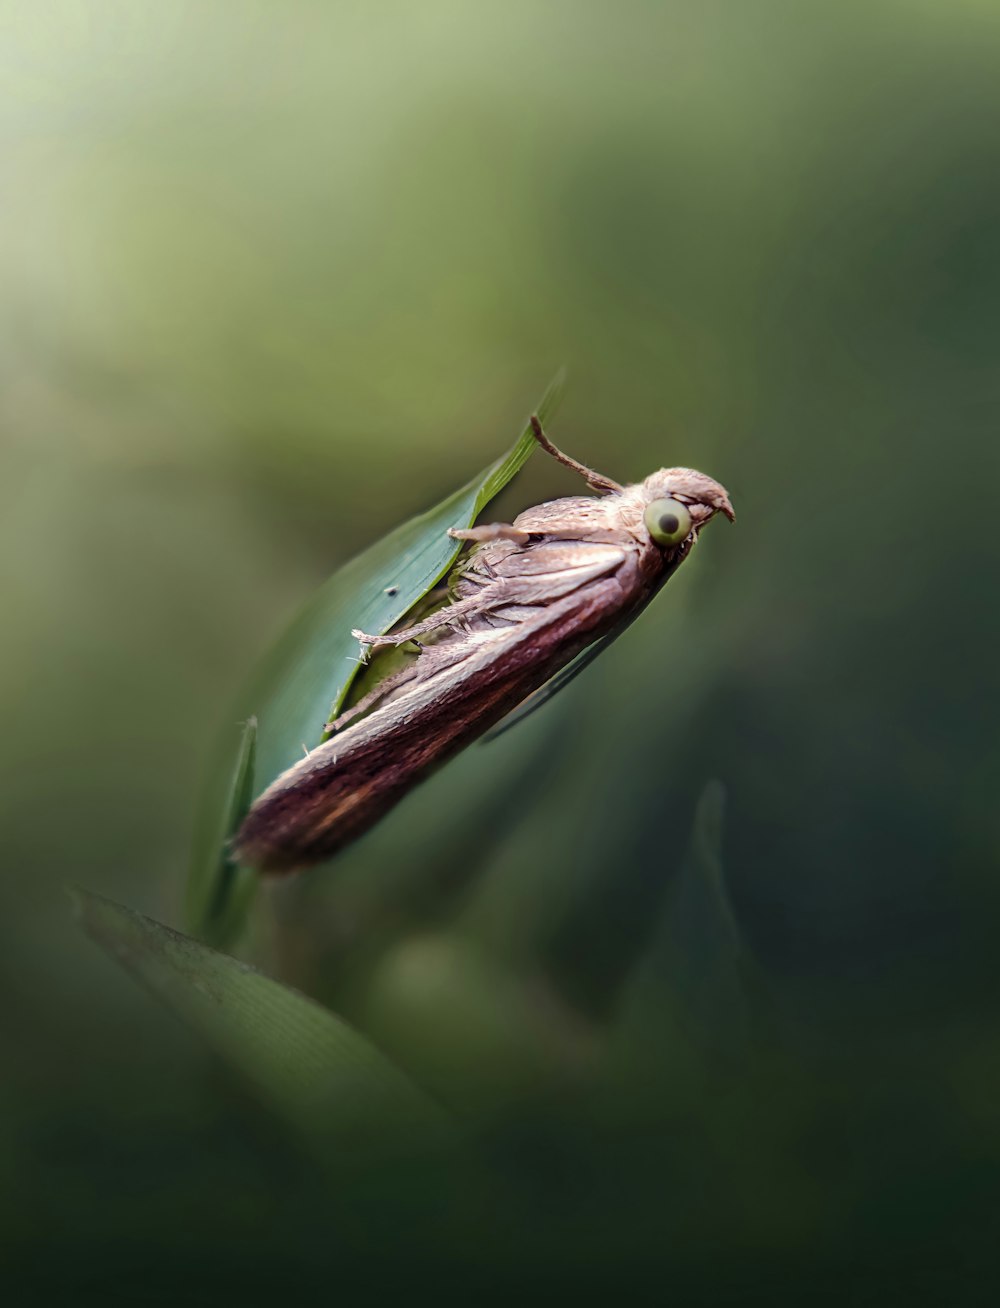 a dragonfly on a leaf